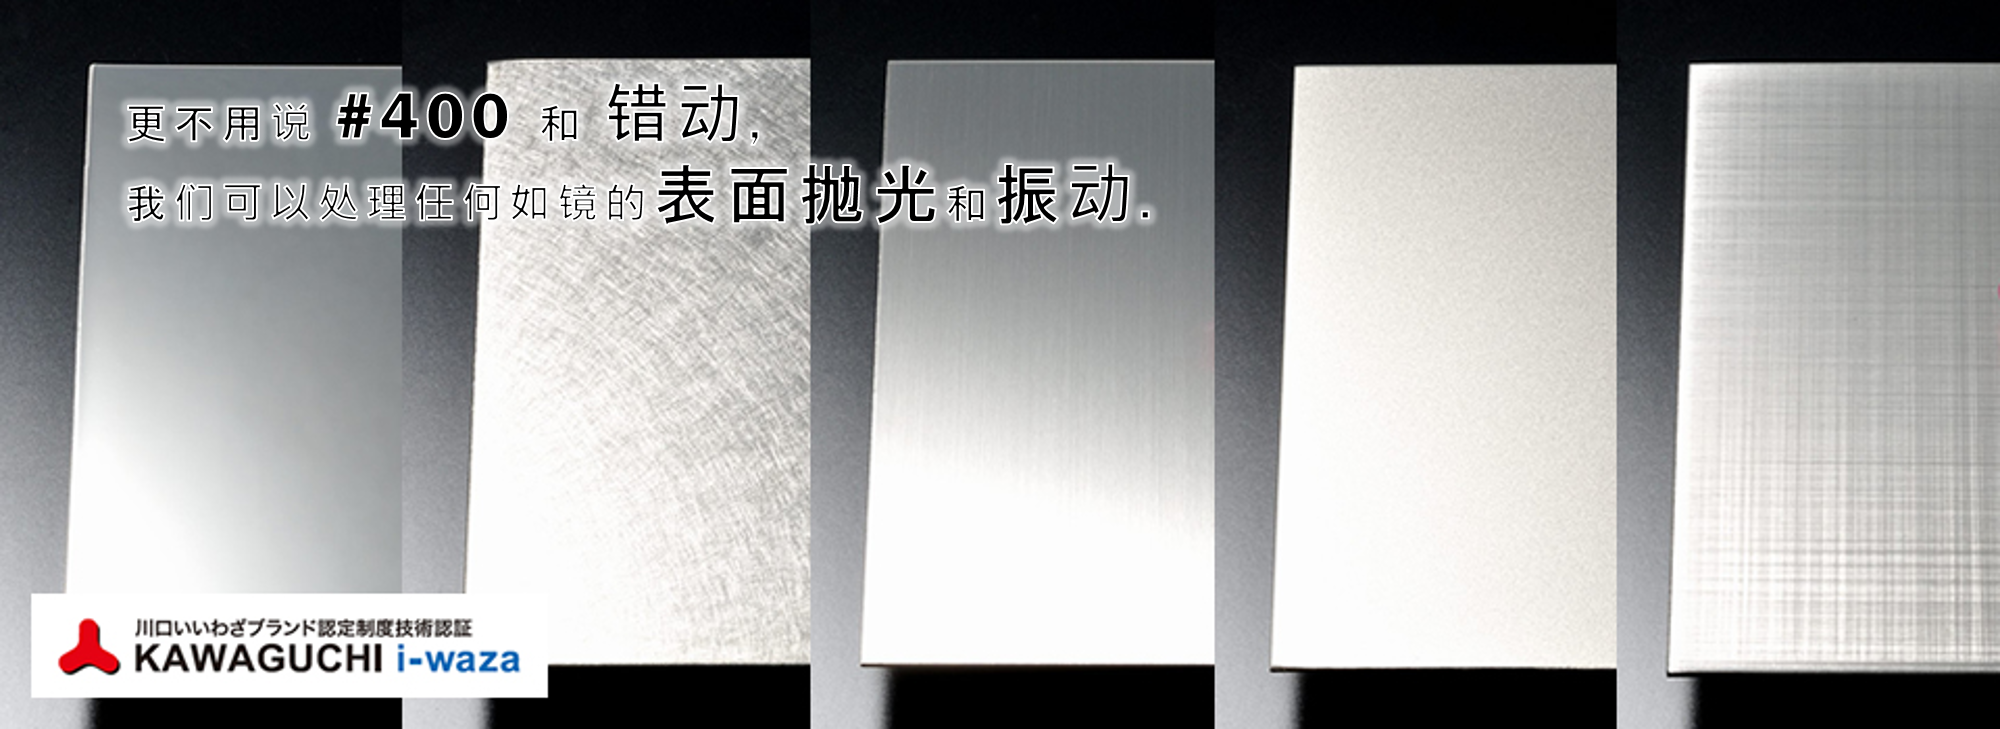 新光不锈钢研磨是位于埼玉县川口市的一家专业的不锈钢研磨公司。无论大小物件我们都会为您进行研磨。 在不能搬运的情况下，我们也可以接受出差研磨。